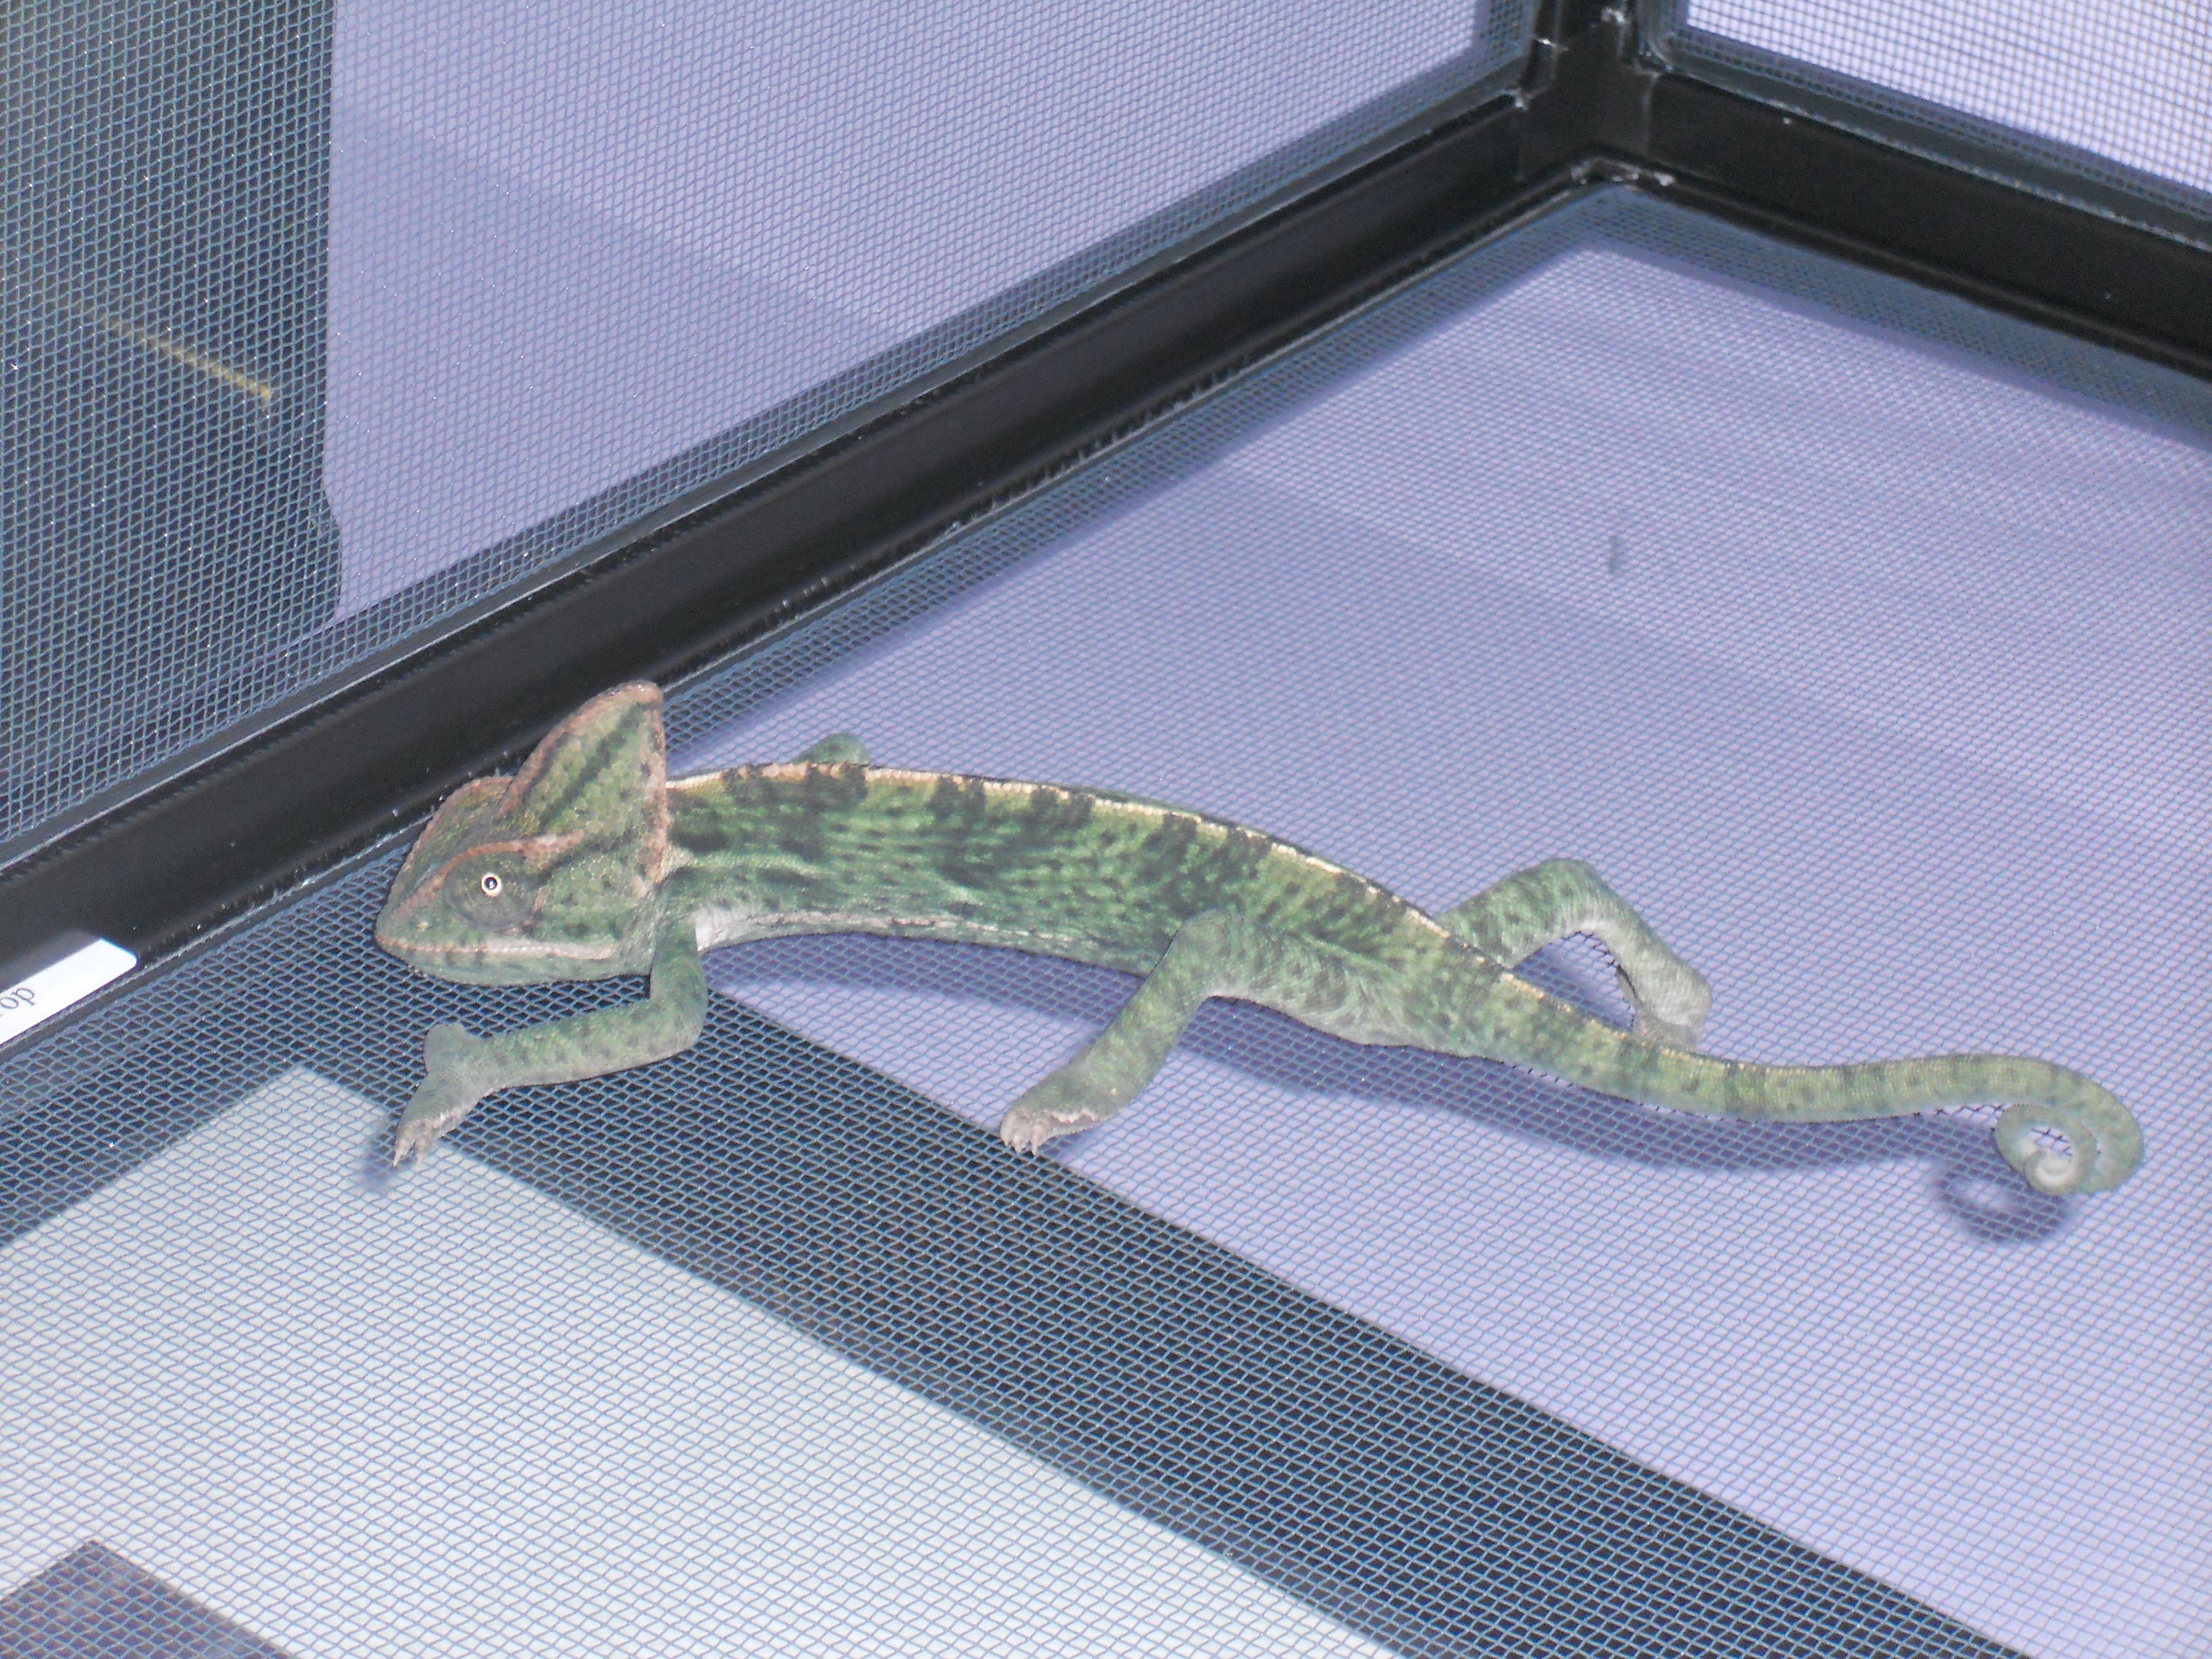 Stretchy Chameleon!